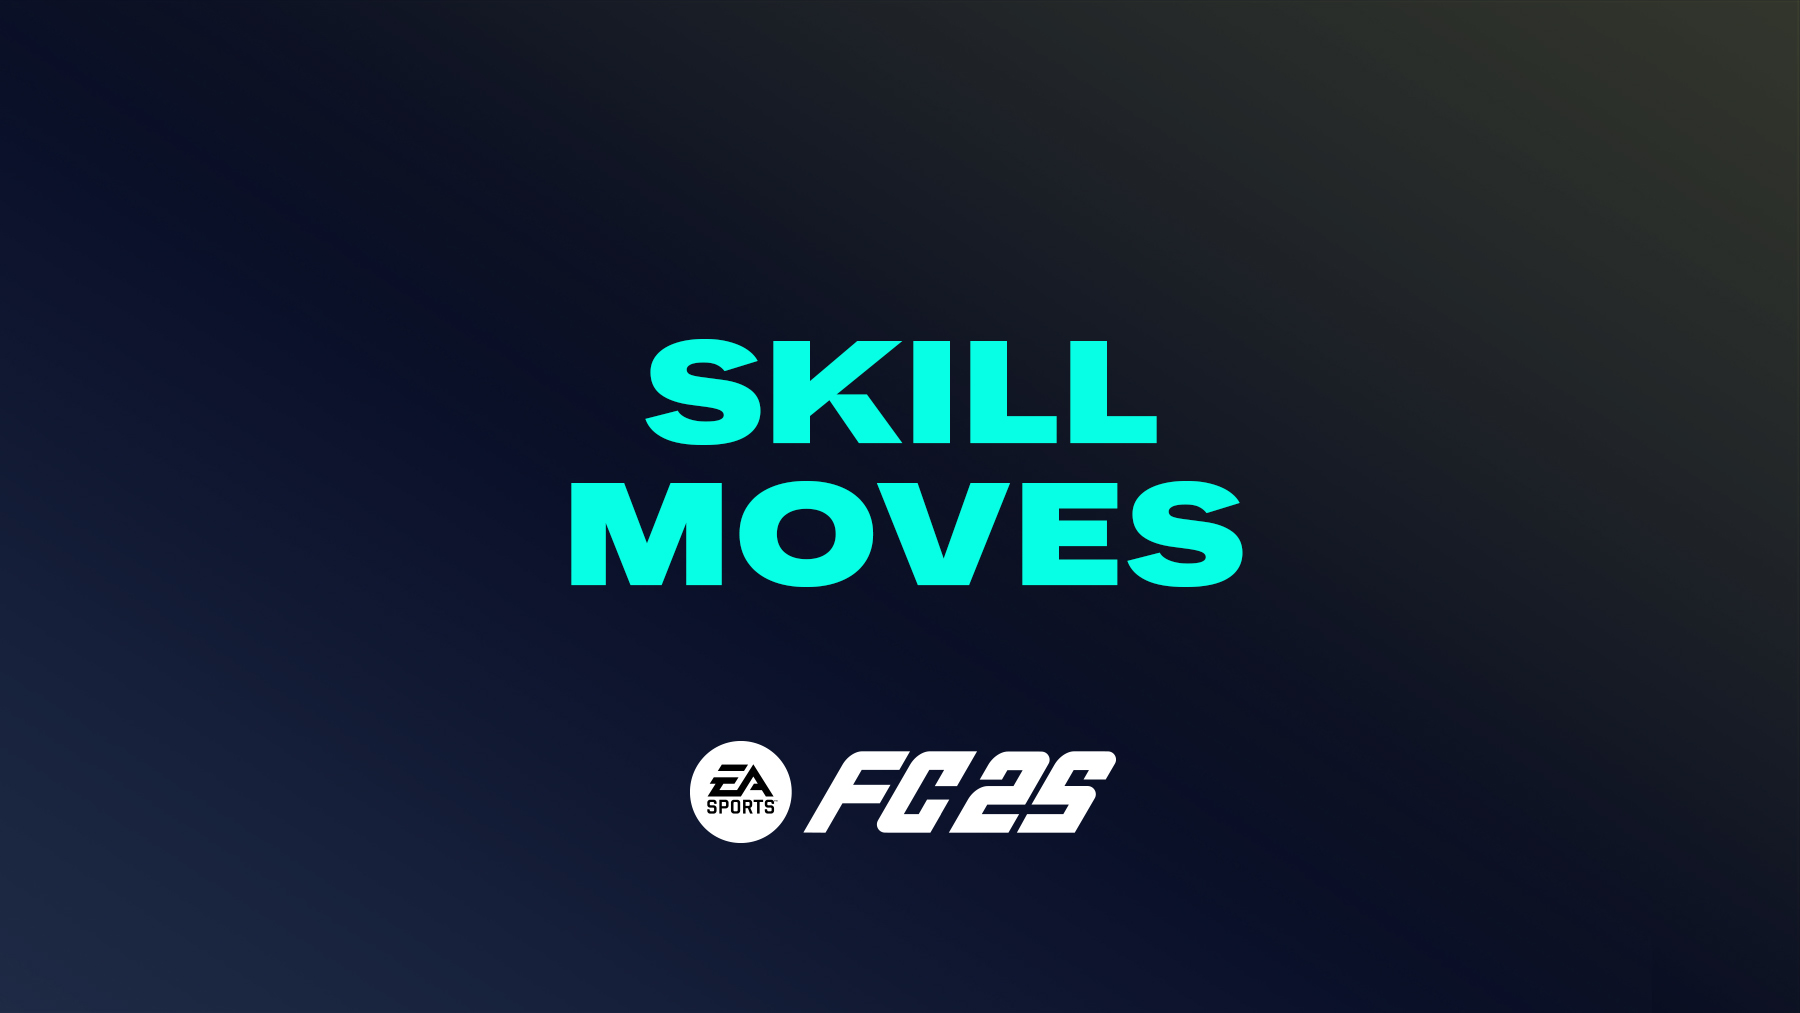 FC 25 Skill Moves